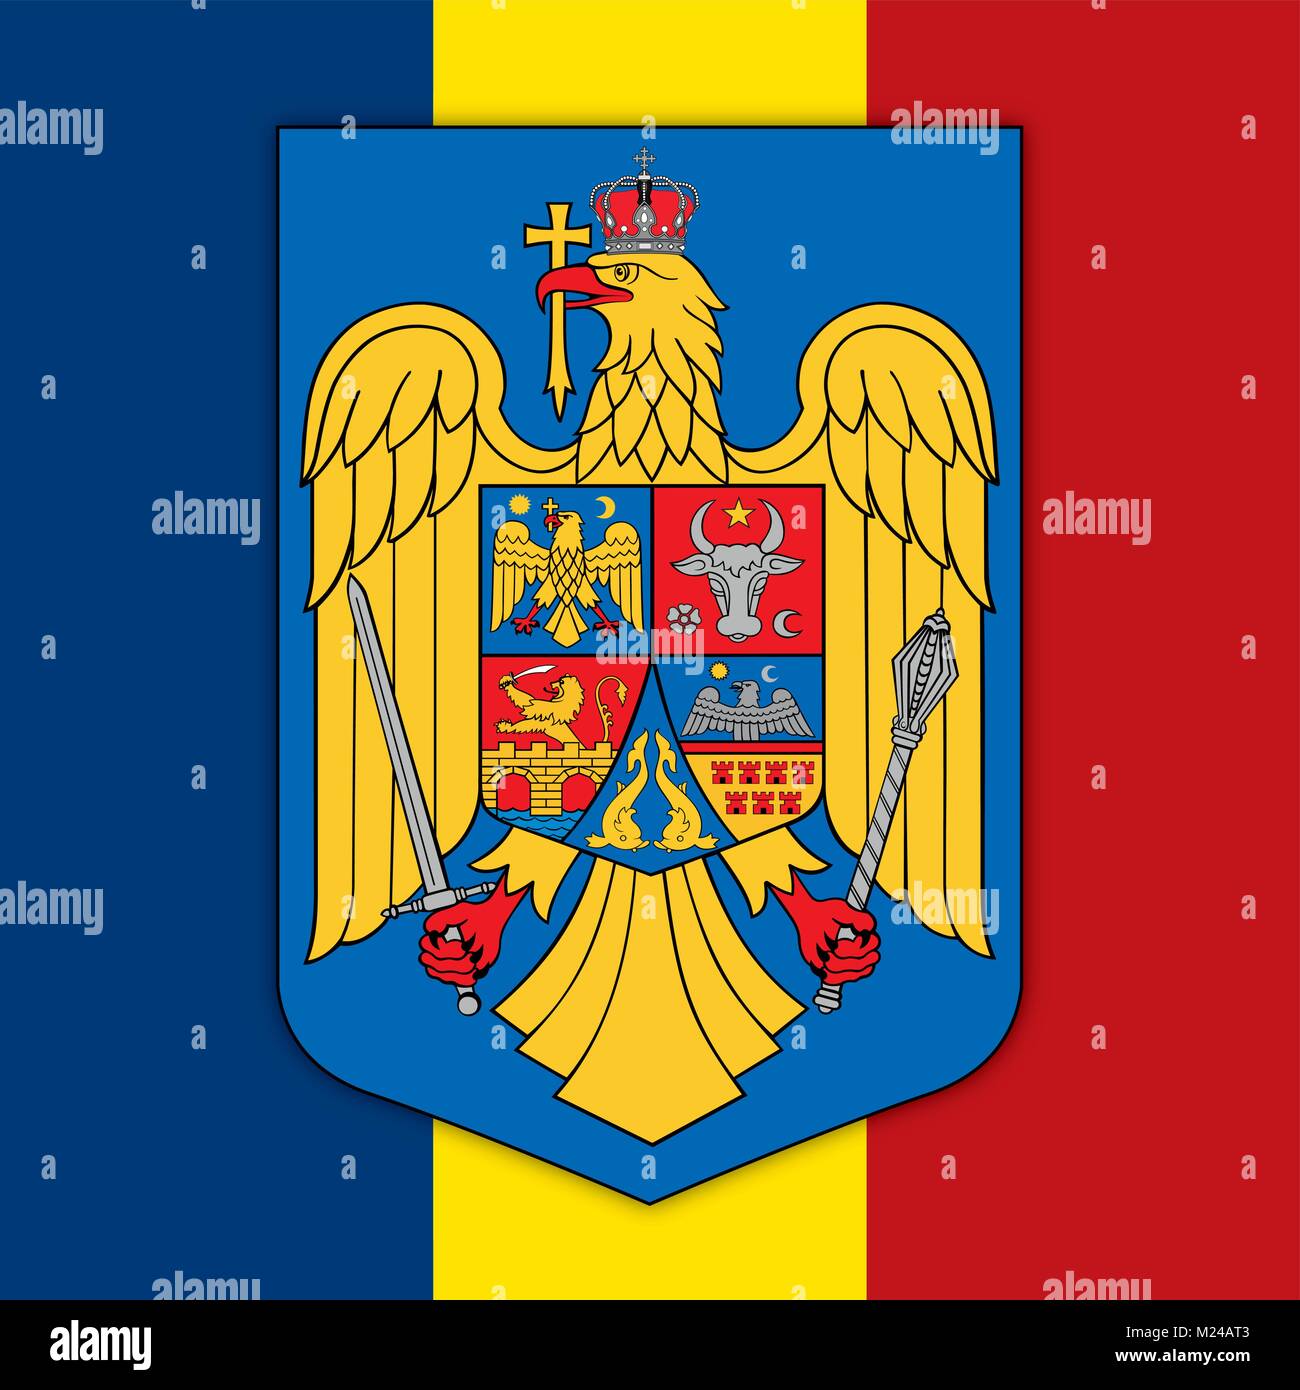 Bandiera della Romania e stemma, simboli ufficiali del paese